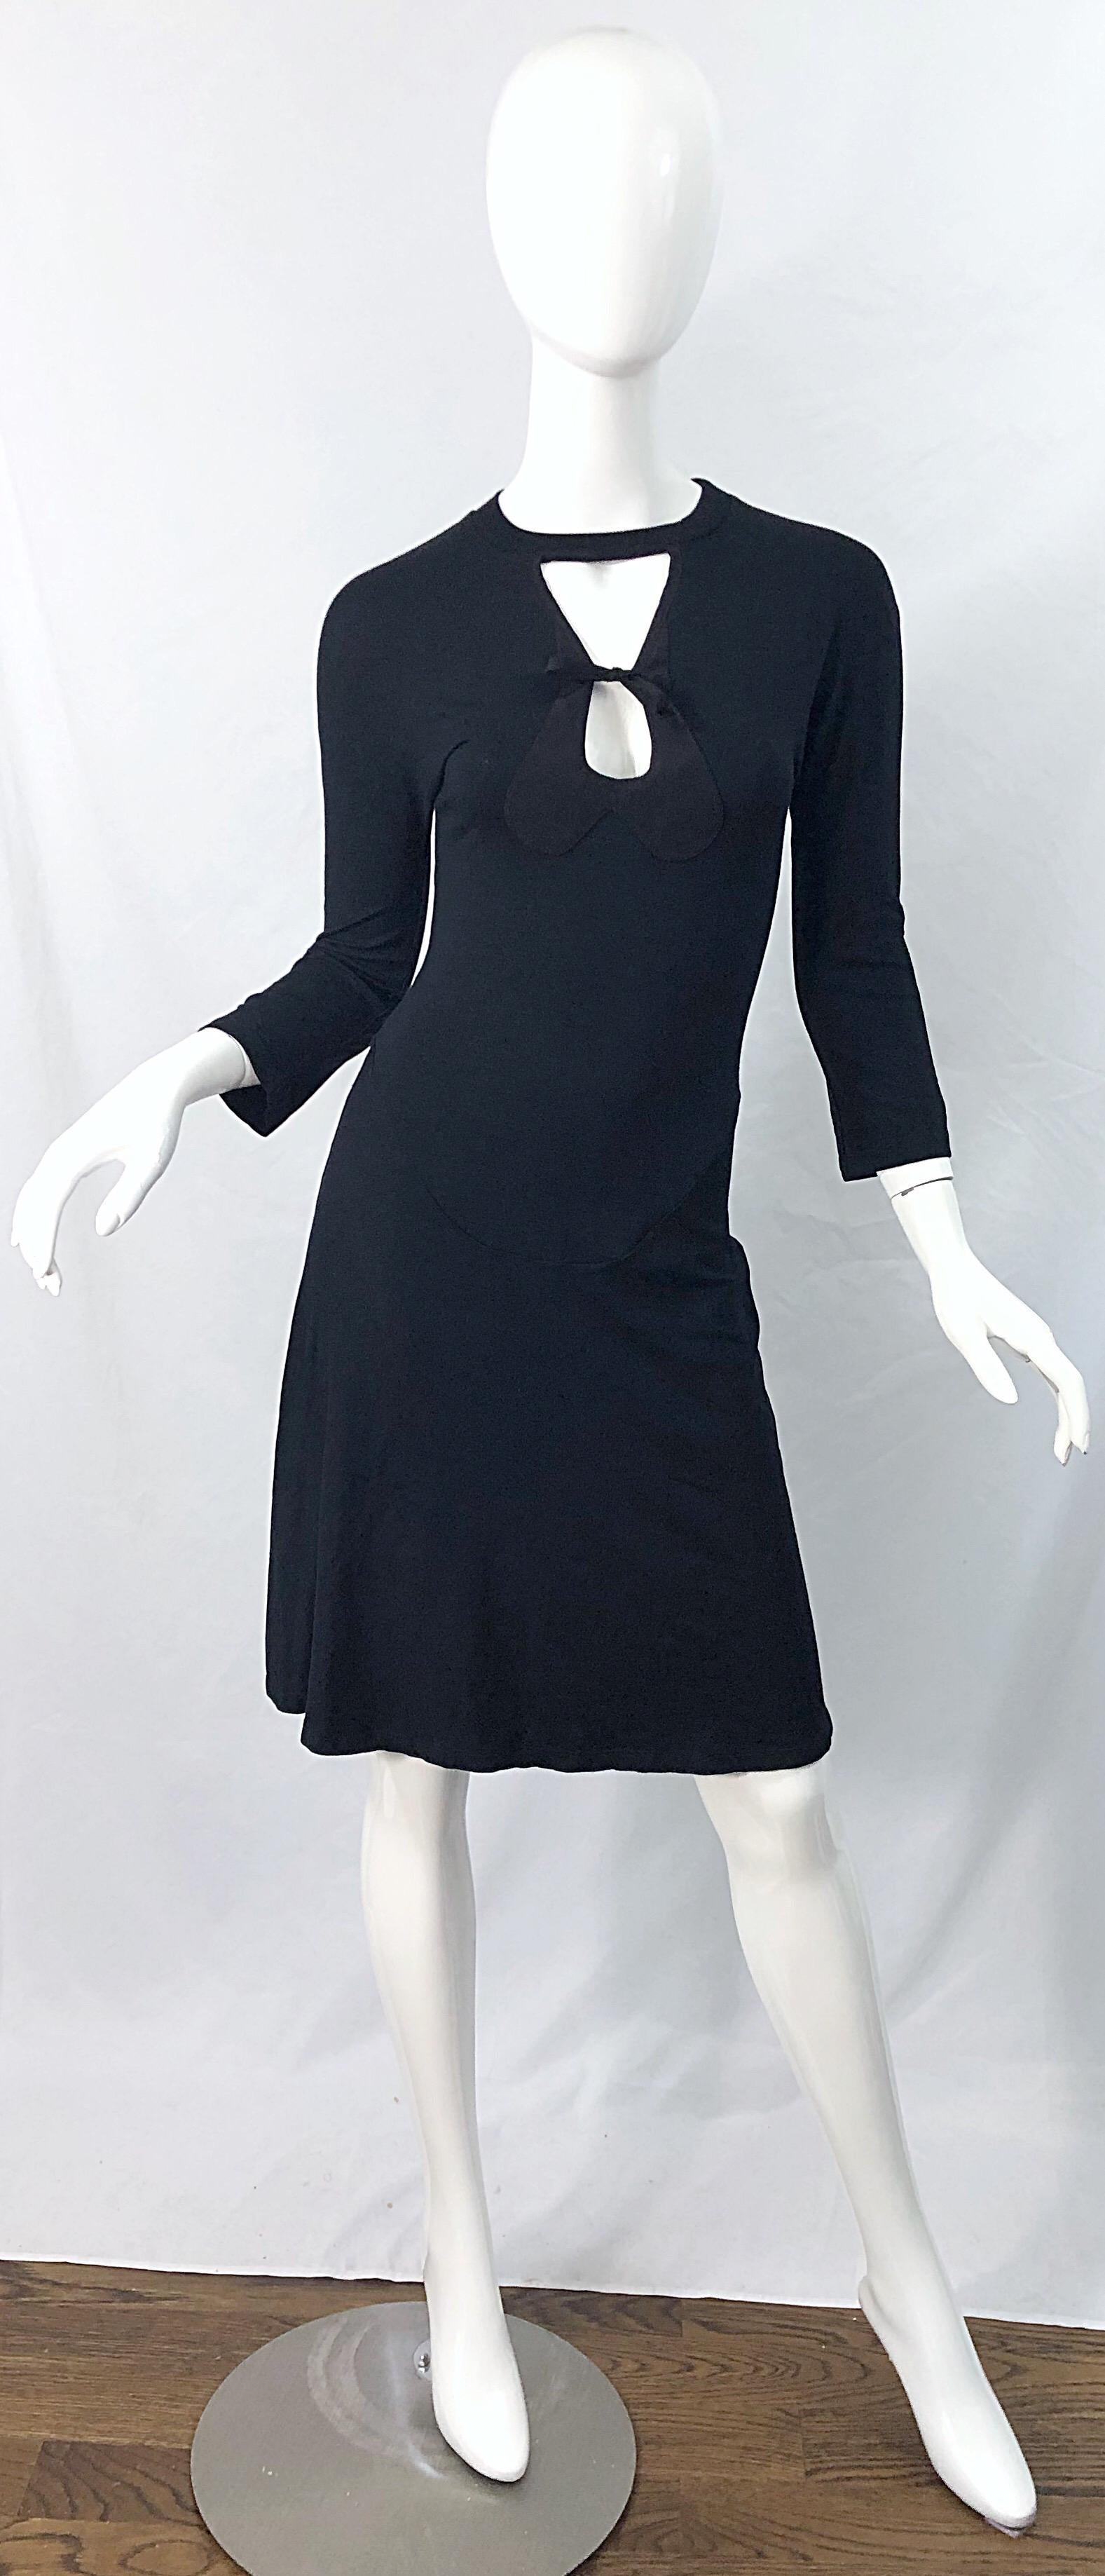 Sexy frühes 2000er GIBO schwarzes ausgeschnittenes 3/4 Ärmel Kleid ! Mit Ausschnitt oberhalb der Büste, der in der Mitte gebunden wird. Wird einfach über den Kopf gestülpt und dehnt sich aus, um zu passen. Das perfekte kleine Schwarze mit so viel